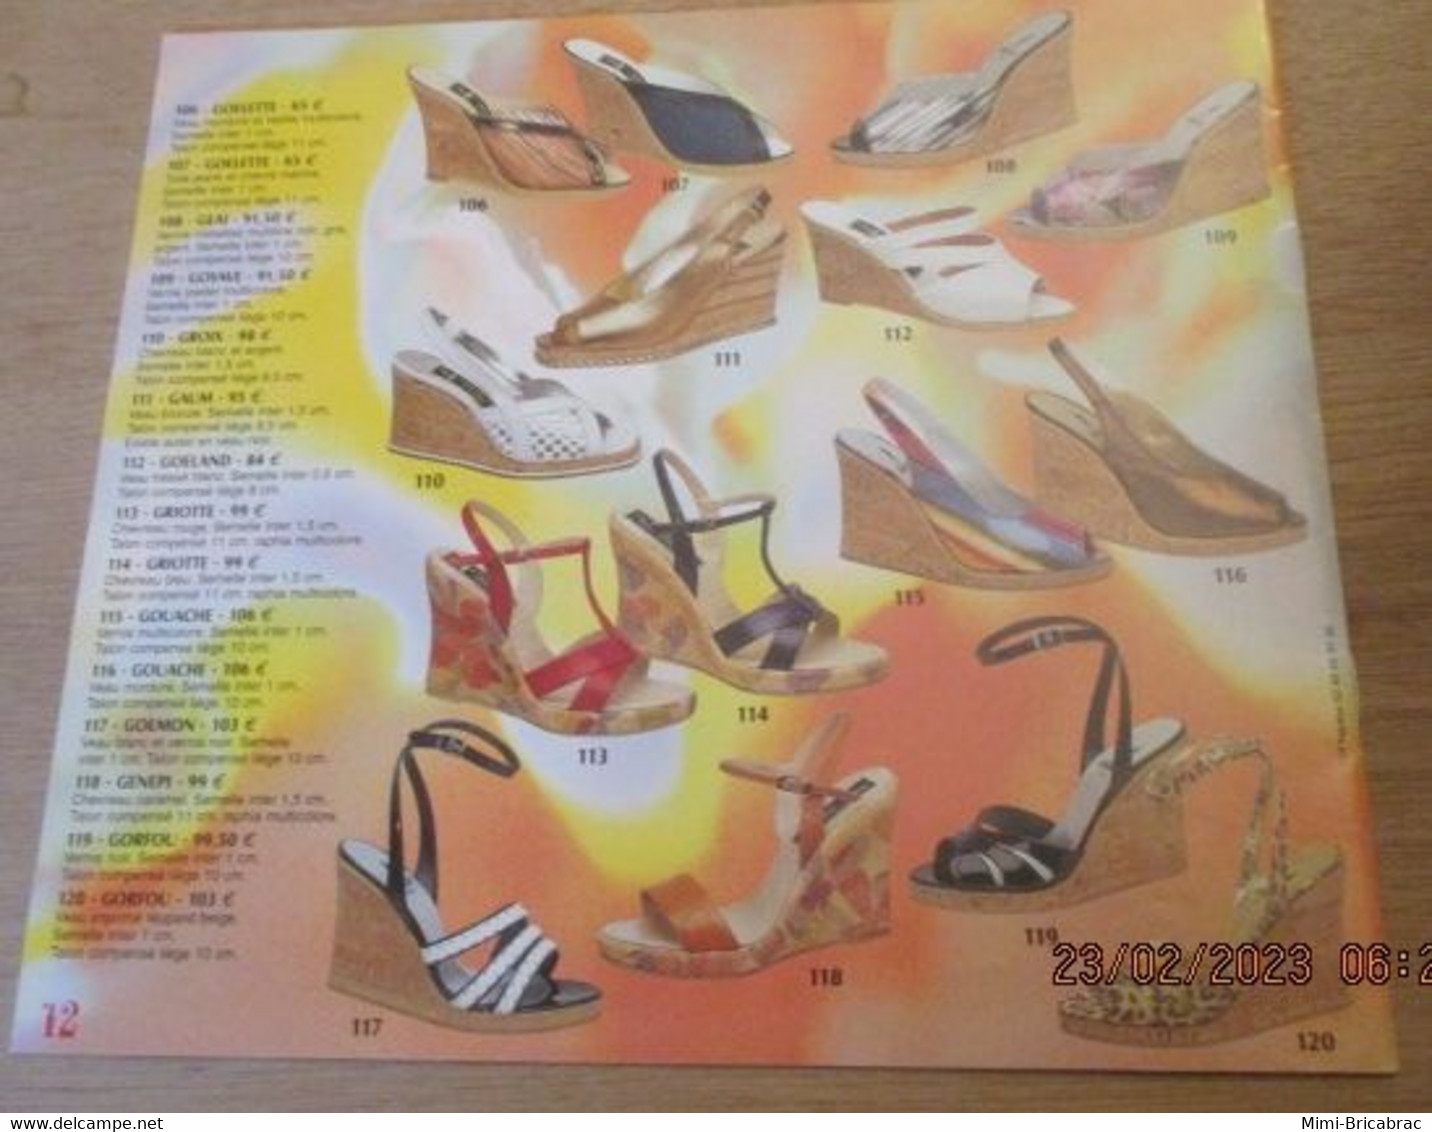 ERN223 Catalogue De La Marque De Chaussures ERNEST PRINTEMPS ETE 2002 L'ex Spécialiste Parisien Du Talon-aiguille - Shoes